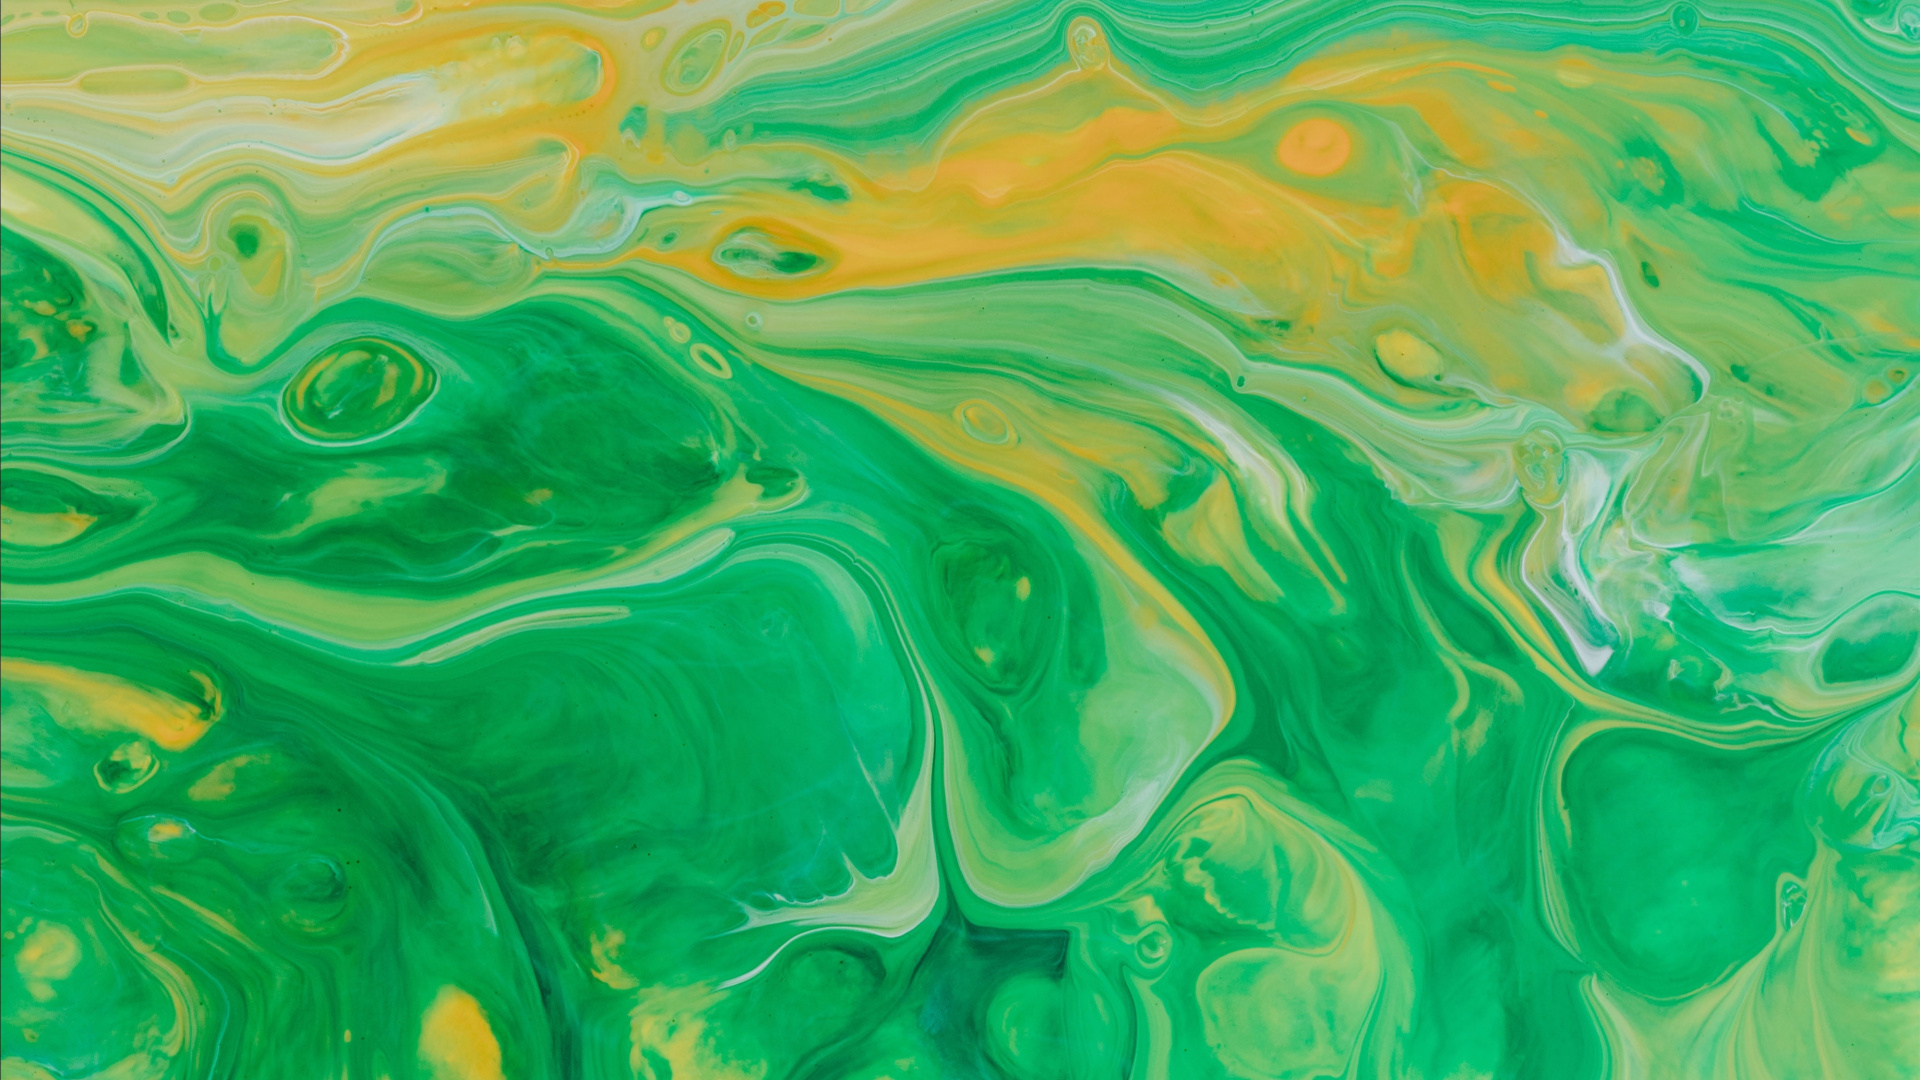 丙烯酸涂料, 水彩画, 绿色的, 艺术, 视觉艺术 壁纸 1920x1080 允许